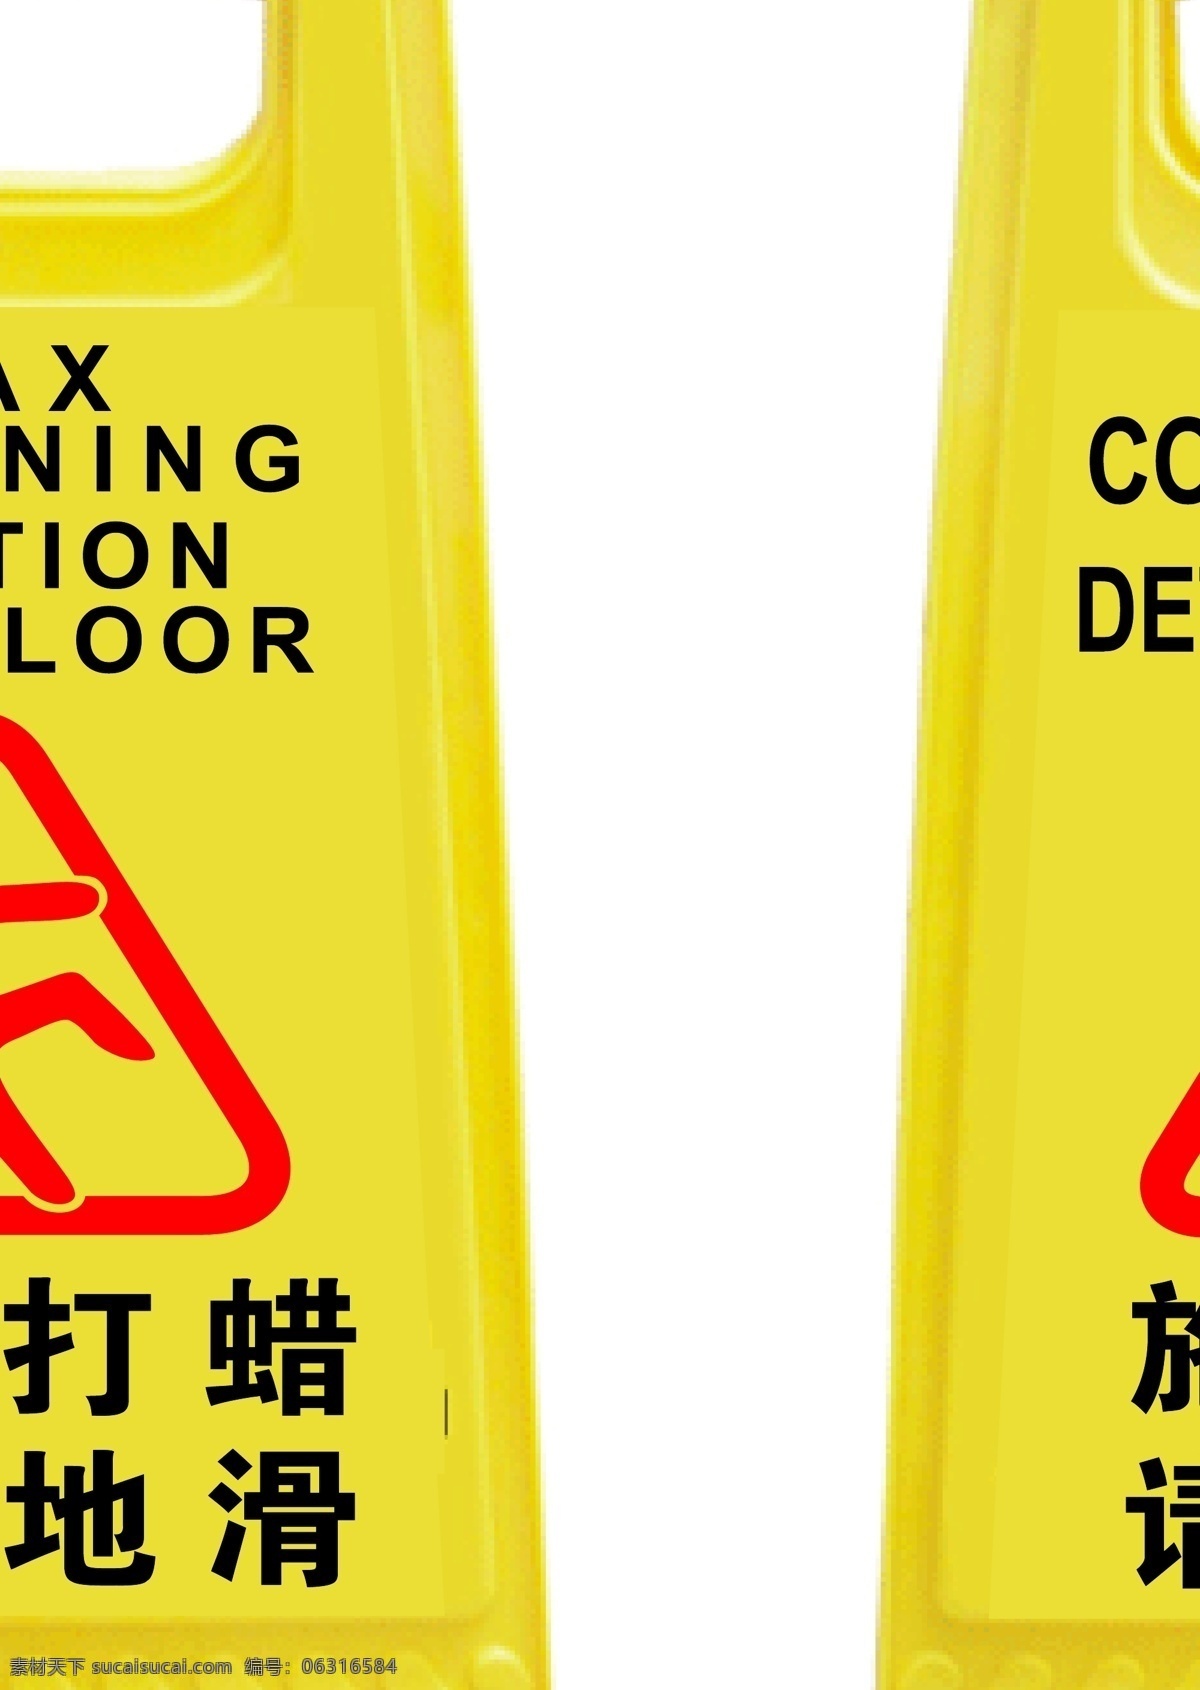 注意标示牌 施工中 请绕行 小心地滑 洗地打蜡 公共标识标志 标识标志图标 矢量